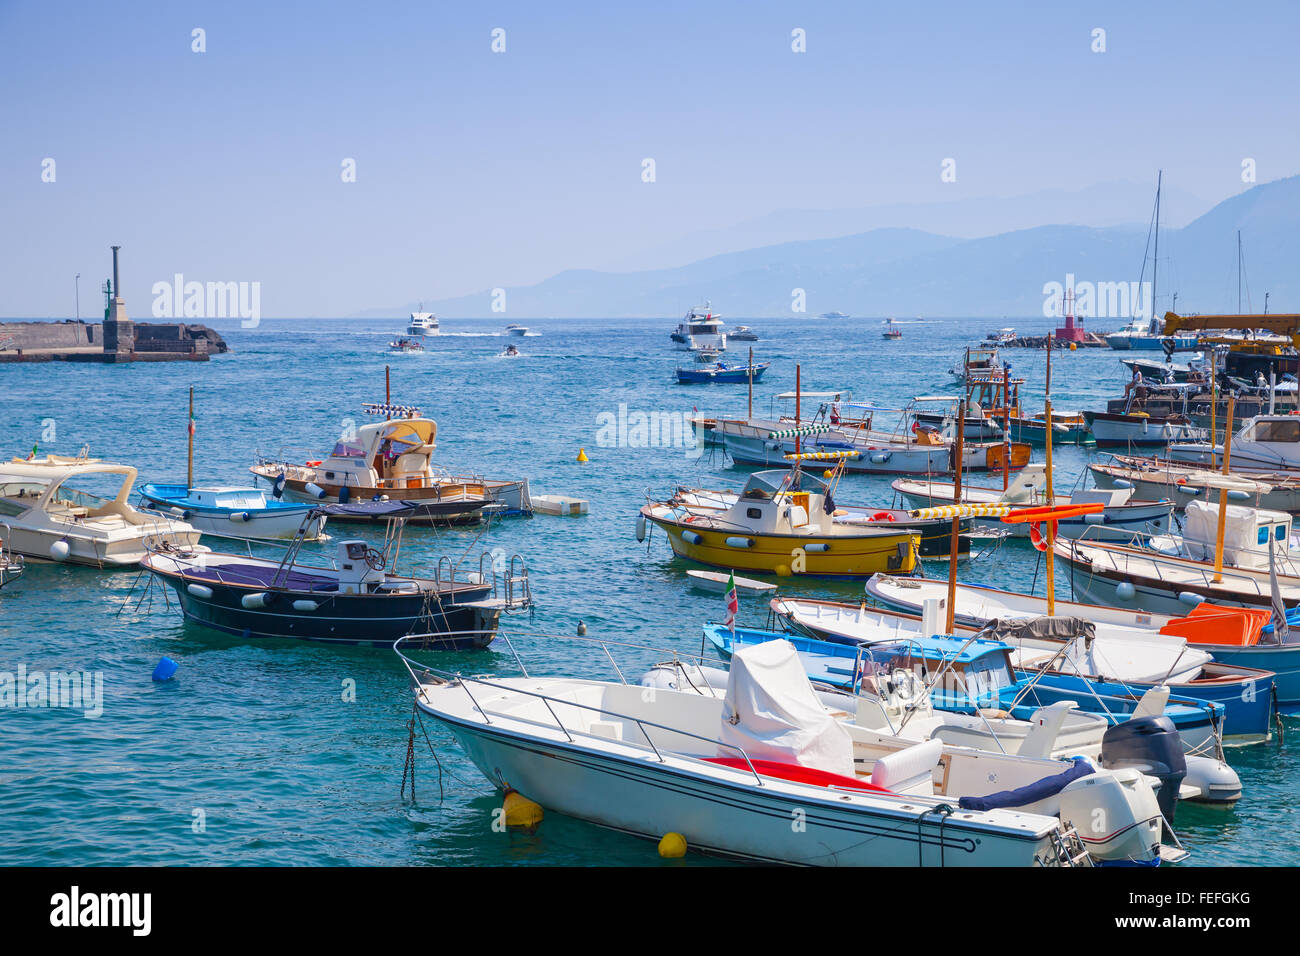 Festgemachten Vergnügen Motorboote im Hafen von Capri Insel, Italien Stockfoto